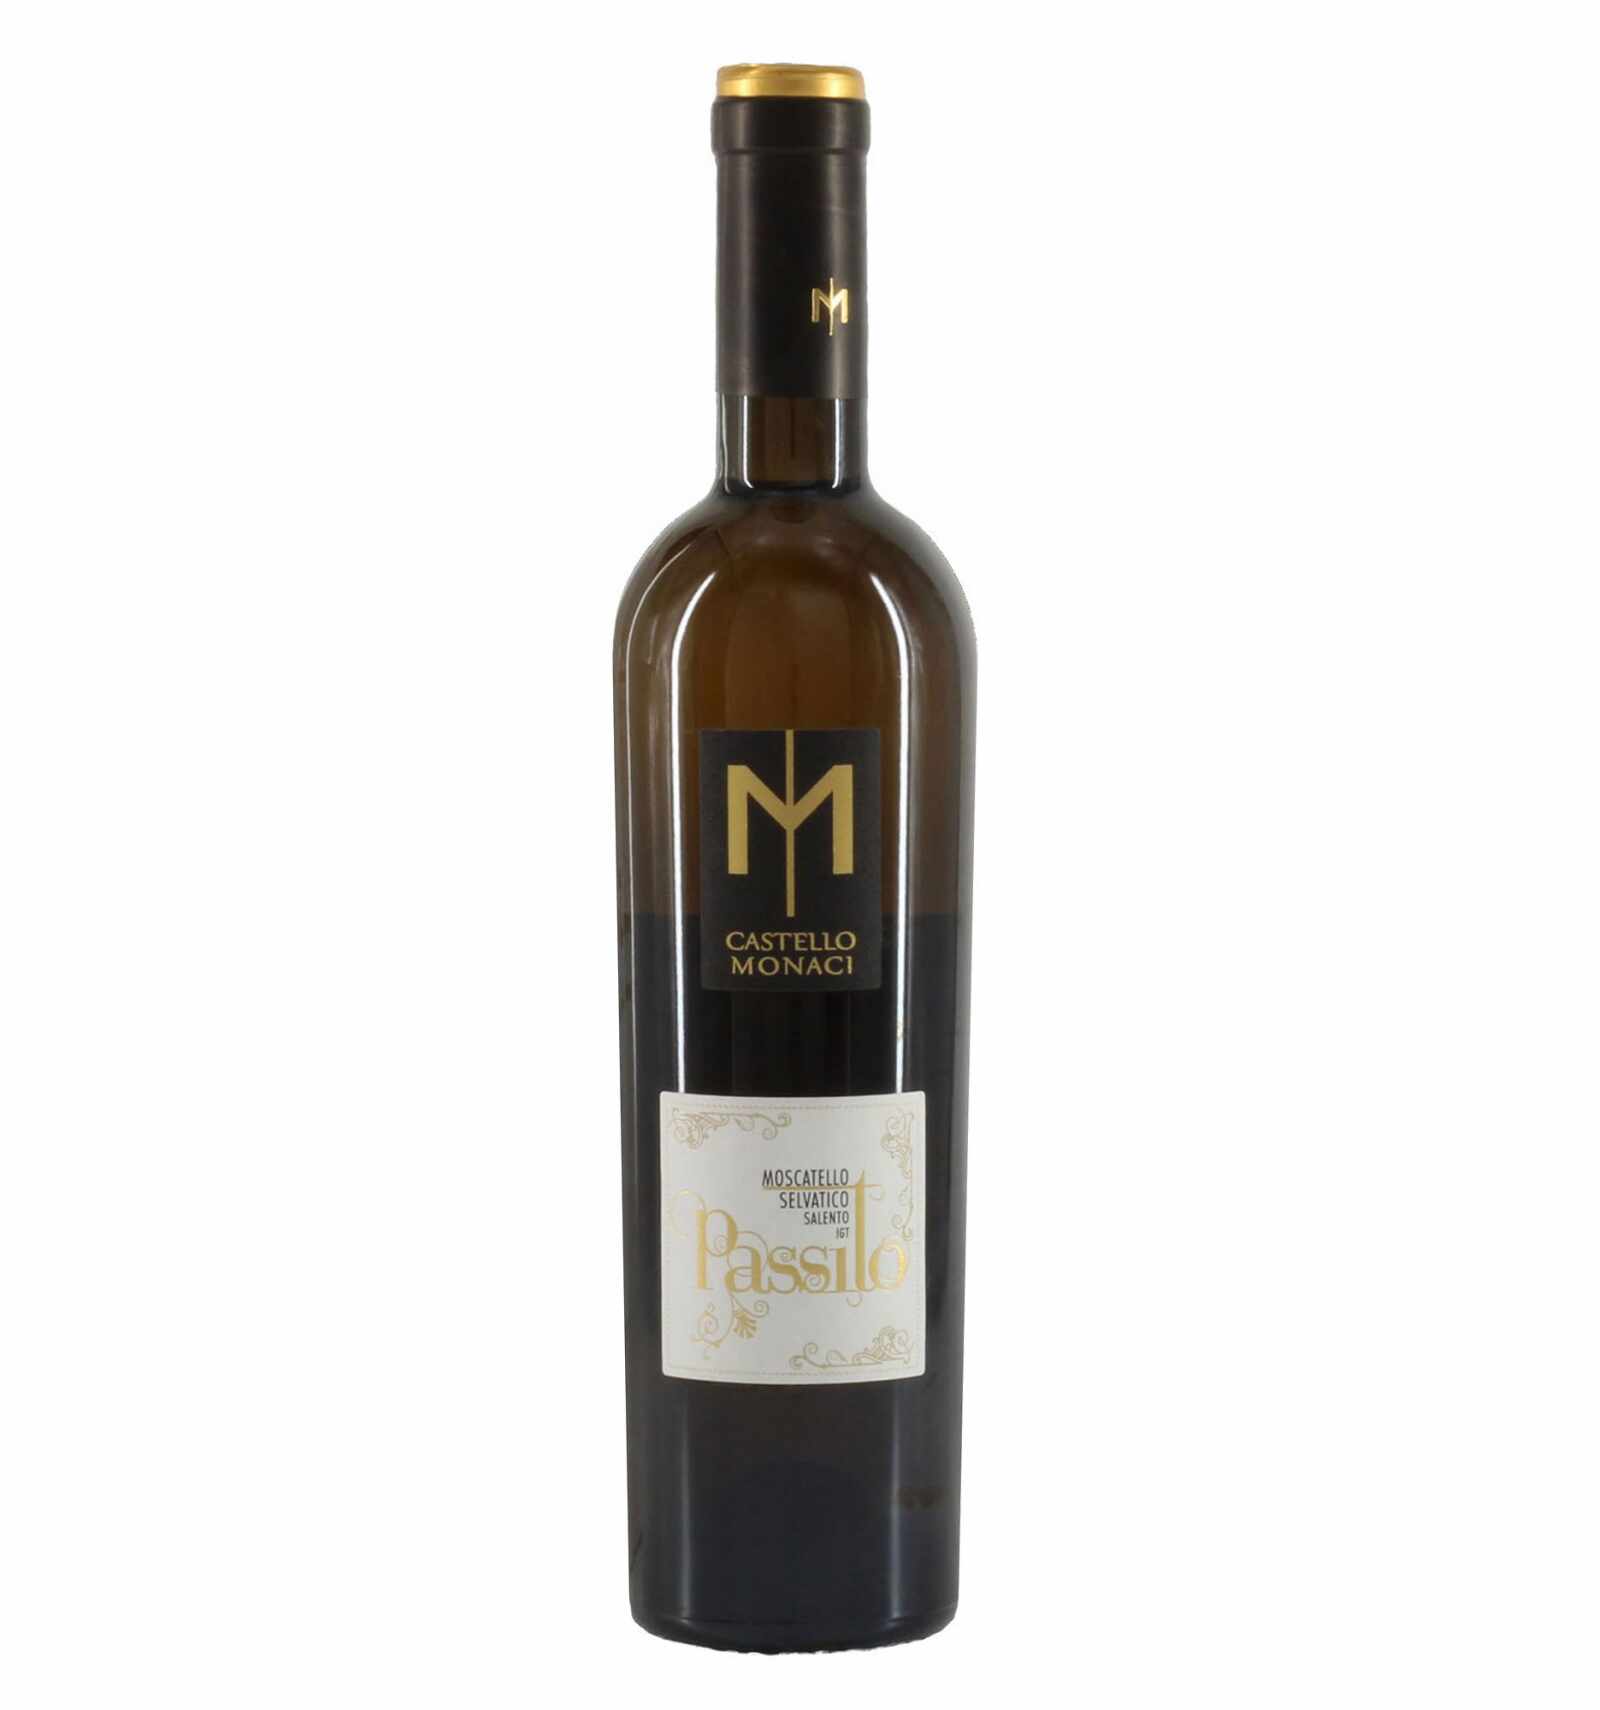 Vin alb dulce, Moscatello Selvatico, Castello Monaci Passito Salento, 0.5L, 13% alc., Italia